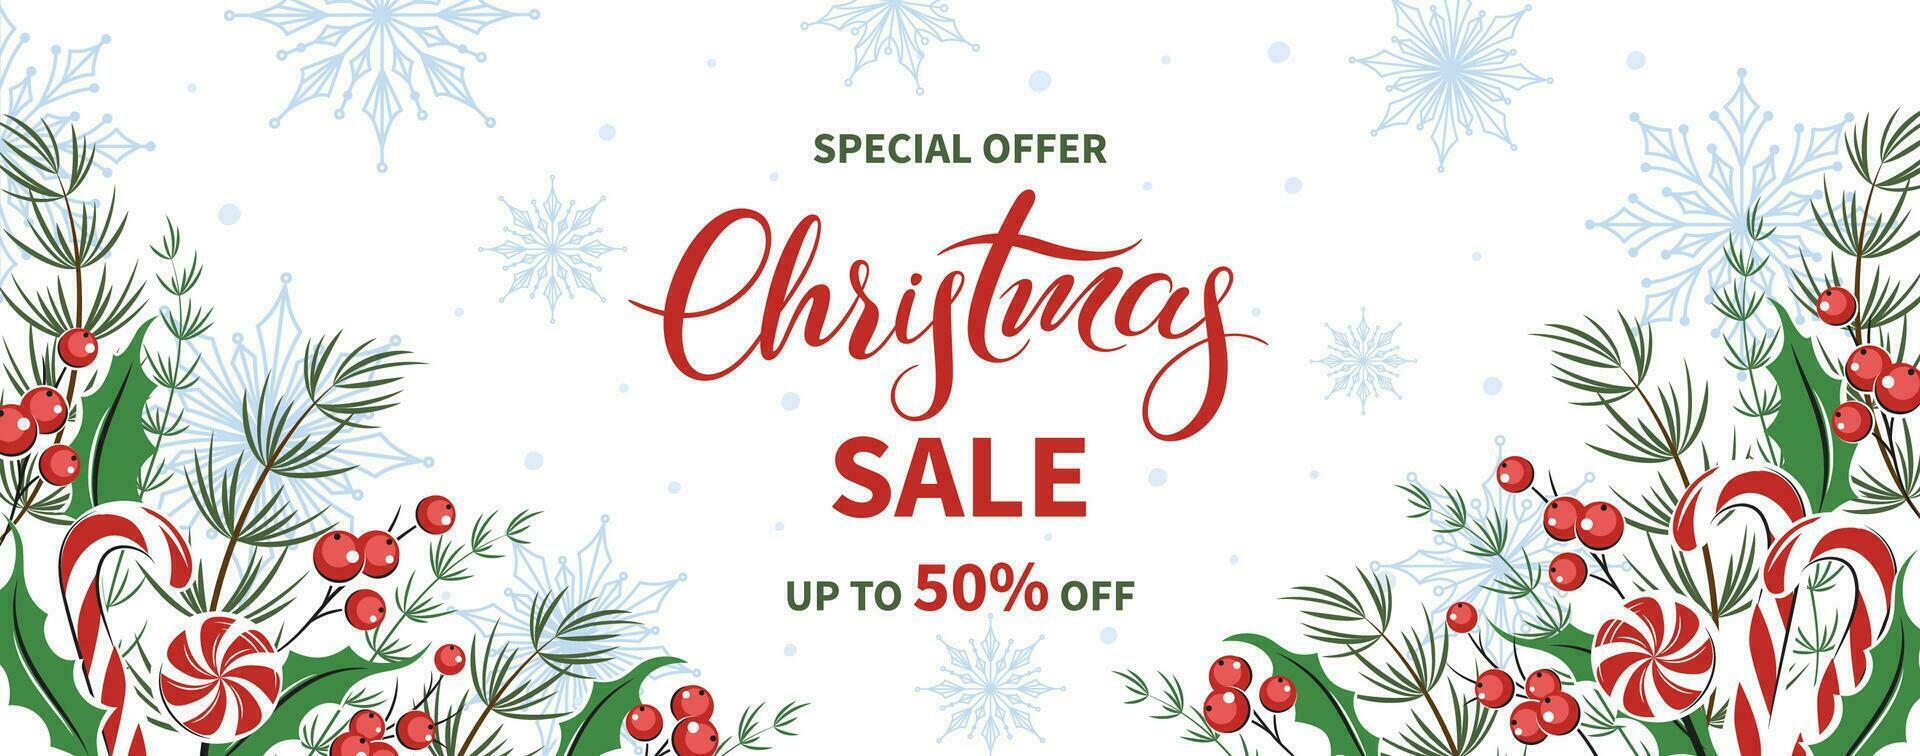 jul försäljning horisontell baner, bakgrund dekorerad med annorlunda vinter- växter, småkakor och sötsaker bakgrund. vektor illustration